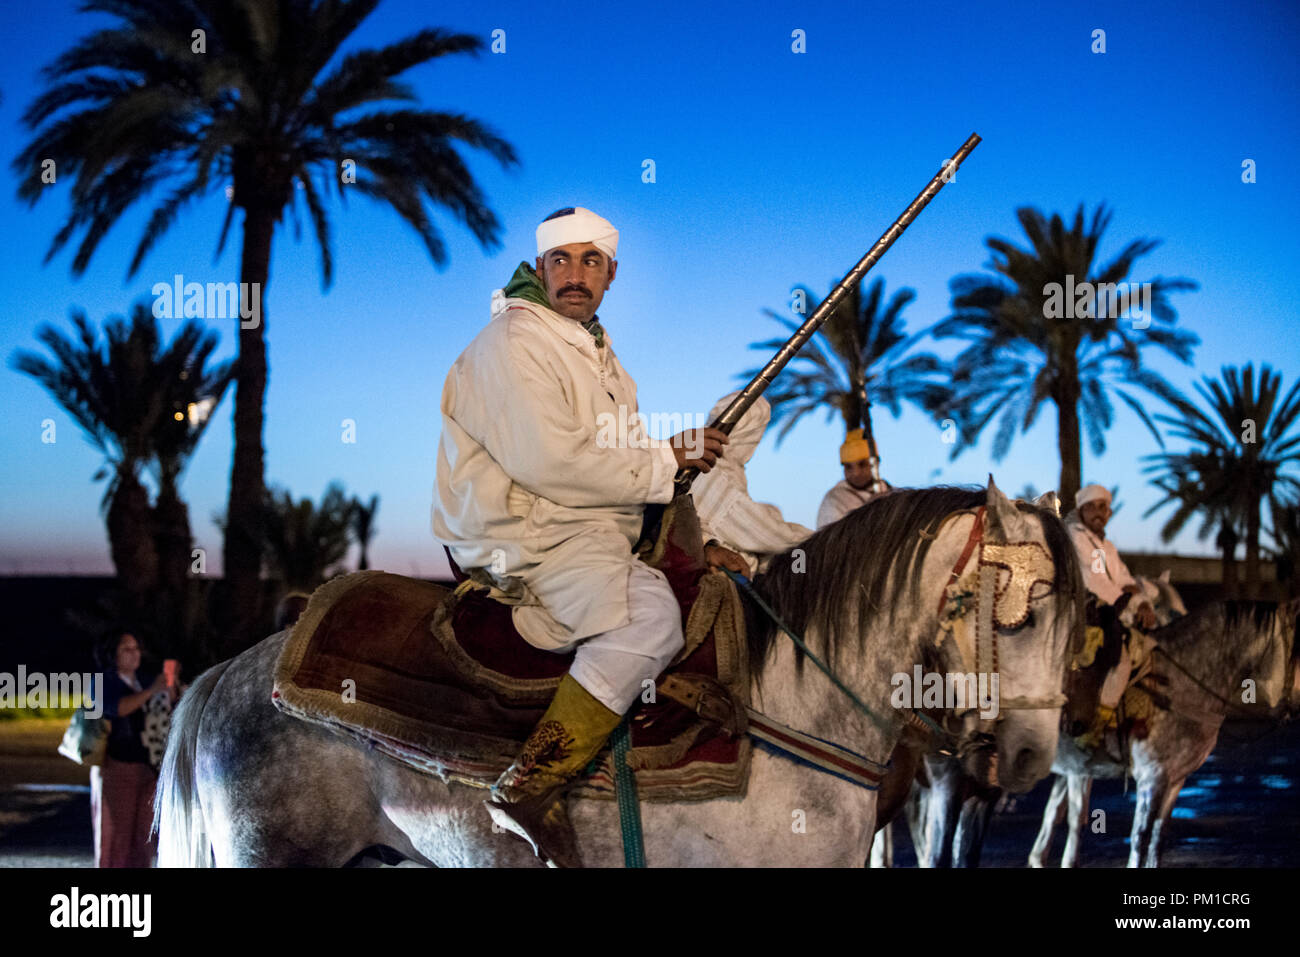 26-02-15, Marrakech, Marruecos. Hombre con traje tradicional a caballo con la pistola en la atracción turística de Fantasia / Chez Ali. Foto © Simon Grosset Foto de stock